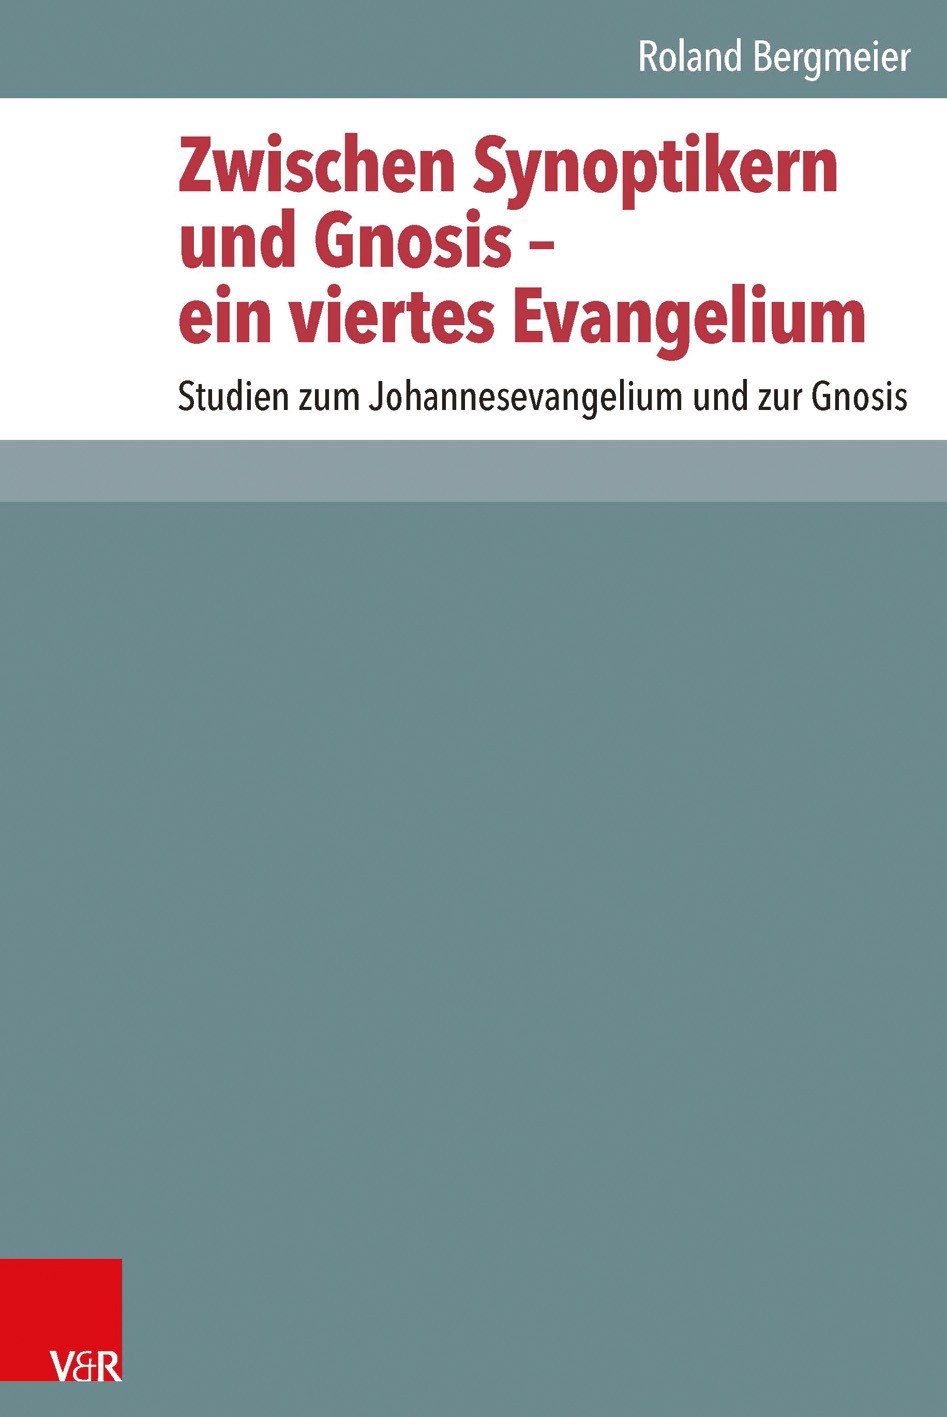 Zwischen Synoptikern und Gnosis – ein viertes Evangelium: Studies on the Gospel of John and on Gnosis